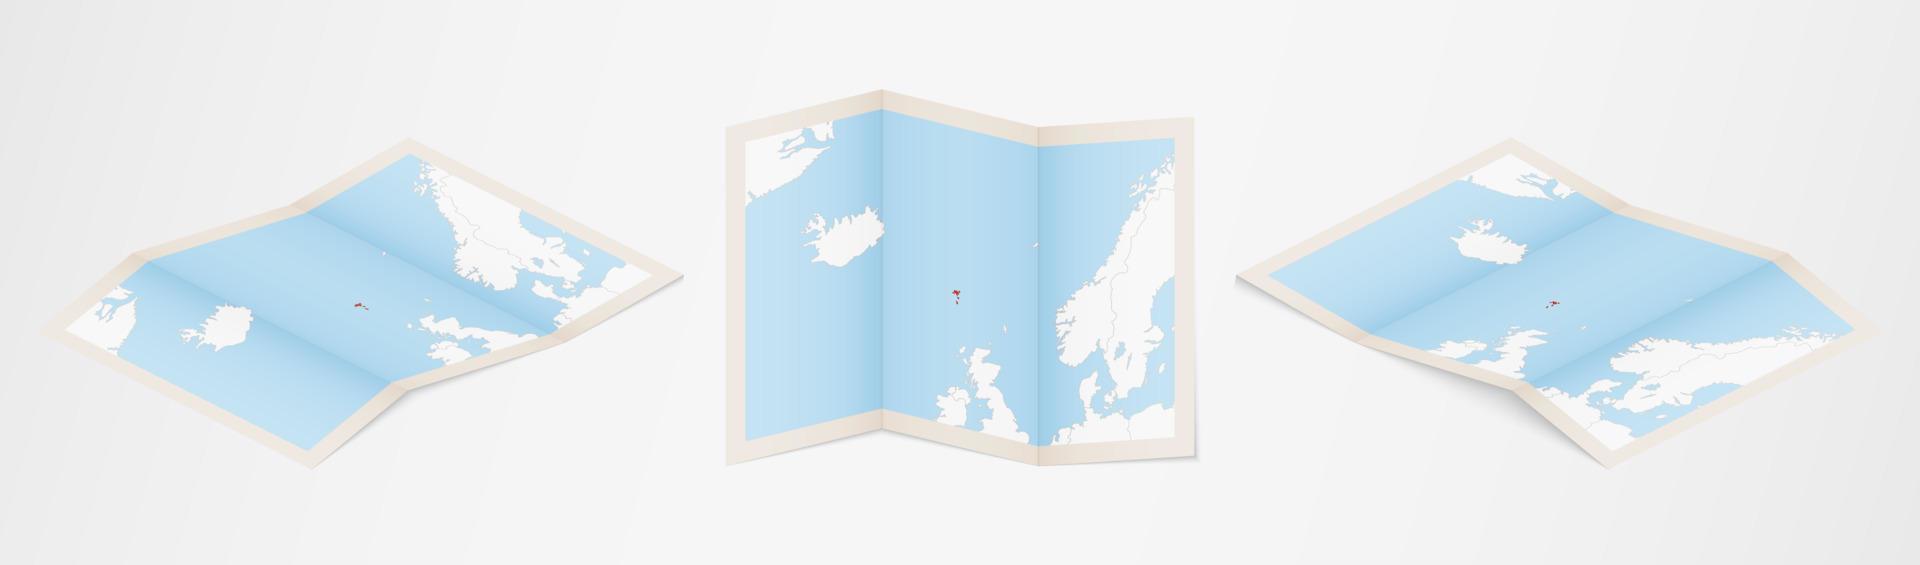 mapa plegado de las islas feroe en tres versiones diferentes. vector